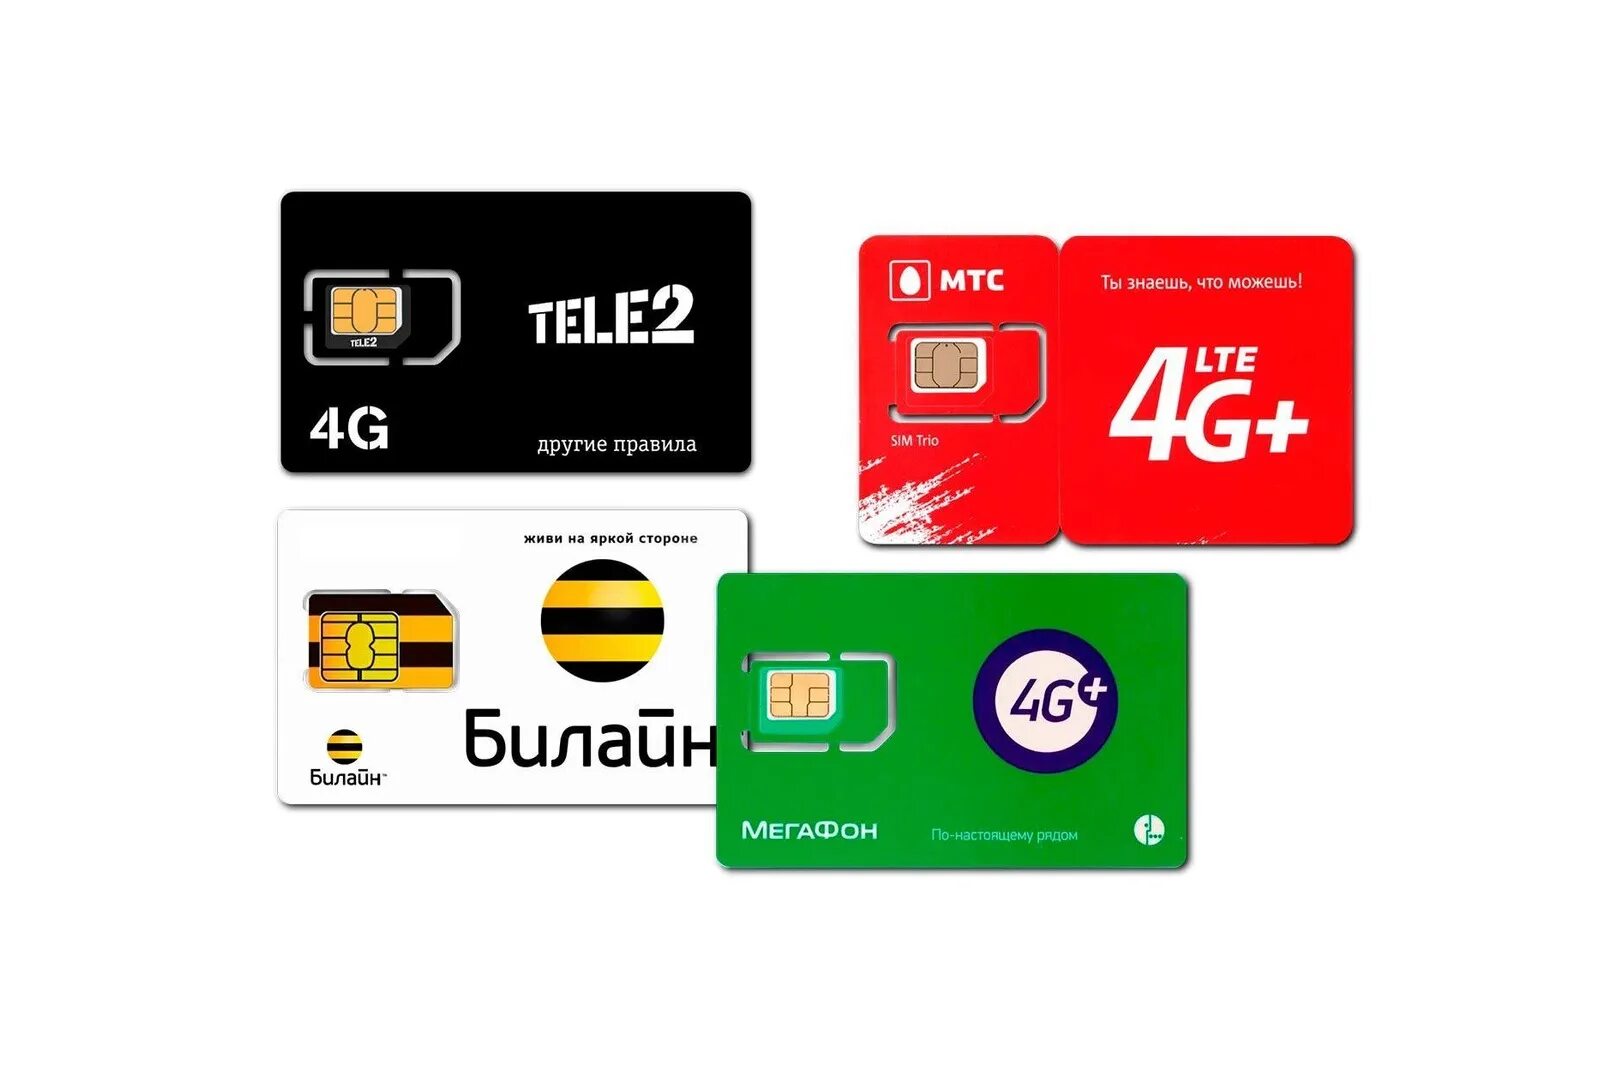 Билайн симка для интернета. SIM-карта теле2, МТС, Билайн, МЕГАФОН. Готовый комплект для усиления мобильного 3g 4g LTE. Симка безлимит. Сим карта для интернета.